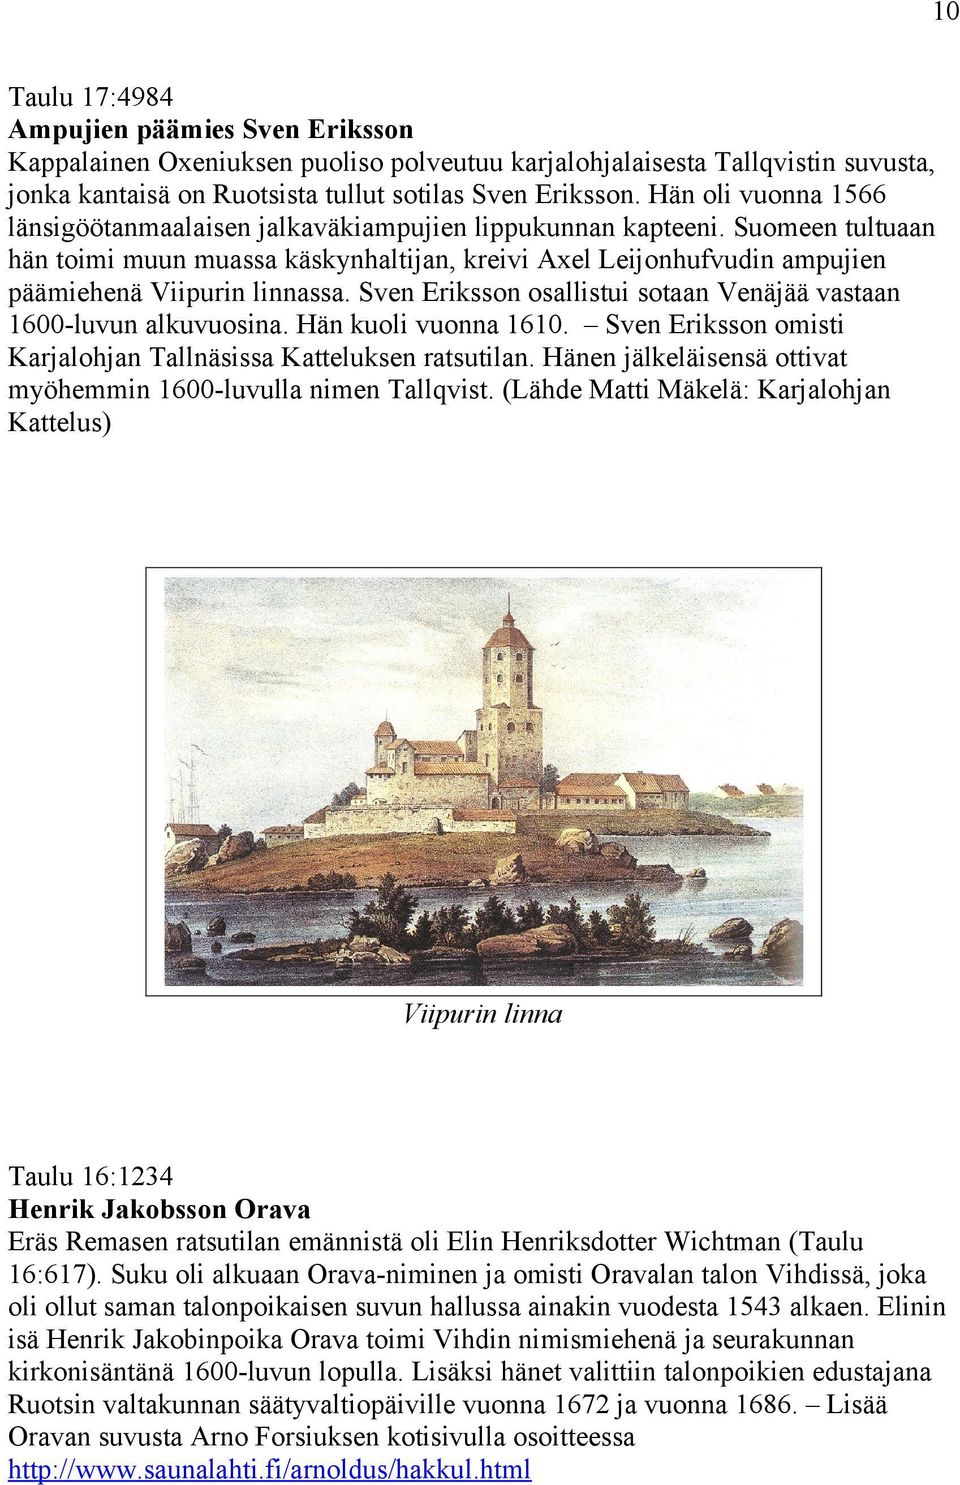 Suomeen tultuaan hän toimi muun muassa käskynhaltijan, kreivi Axel Leijonhufvudin ampujien päämiehenä Viipurin linnassa. Sven Eriksson osallistui sotaan Venäjää vastaan 1600-luvun alkuvuosina.